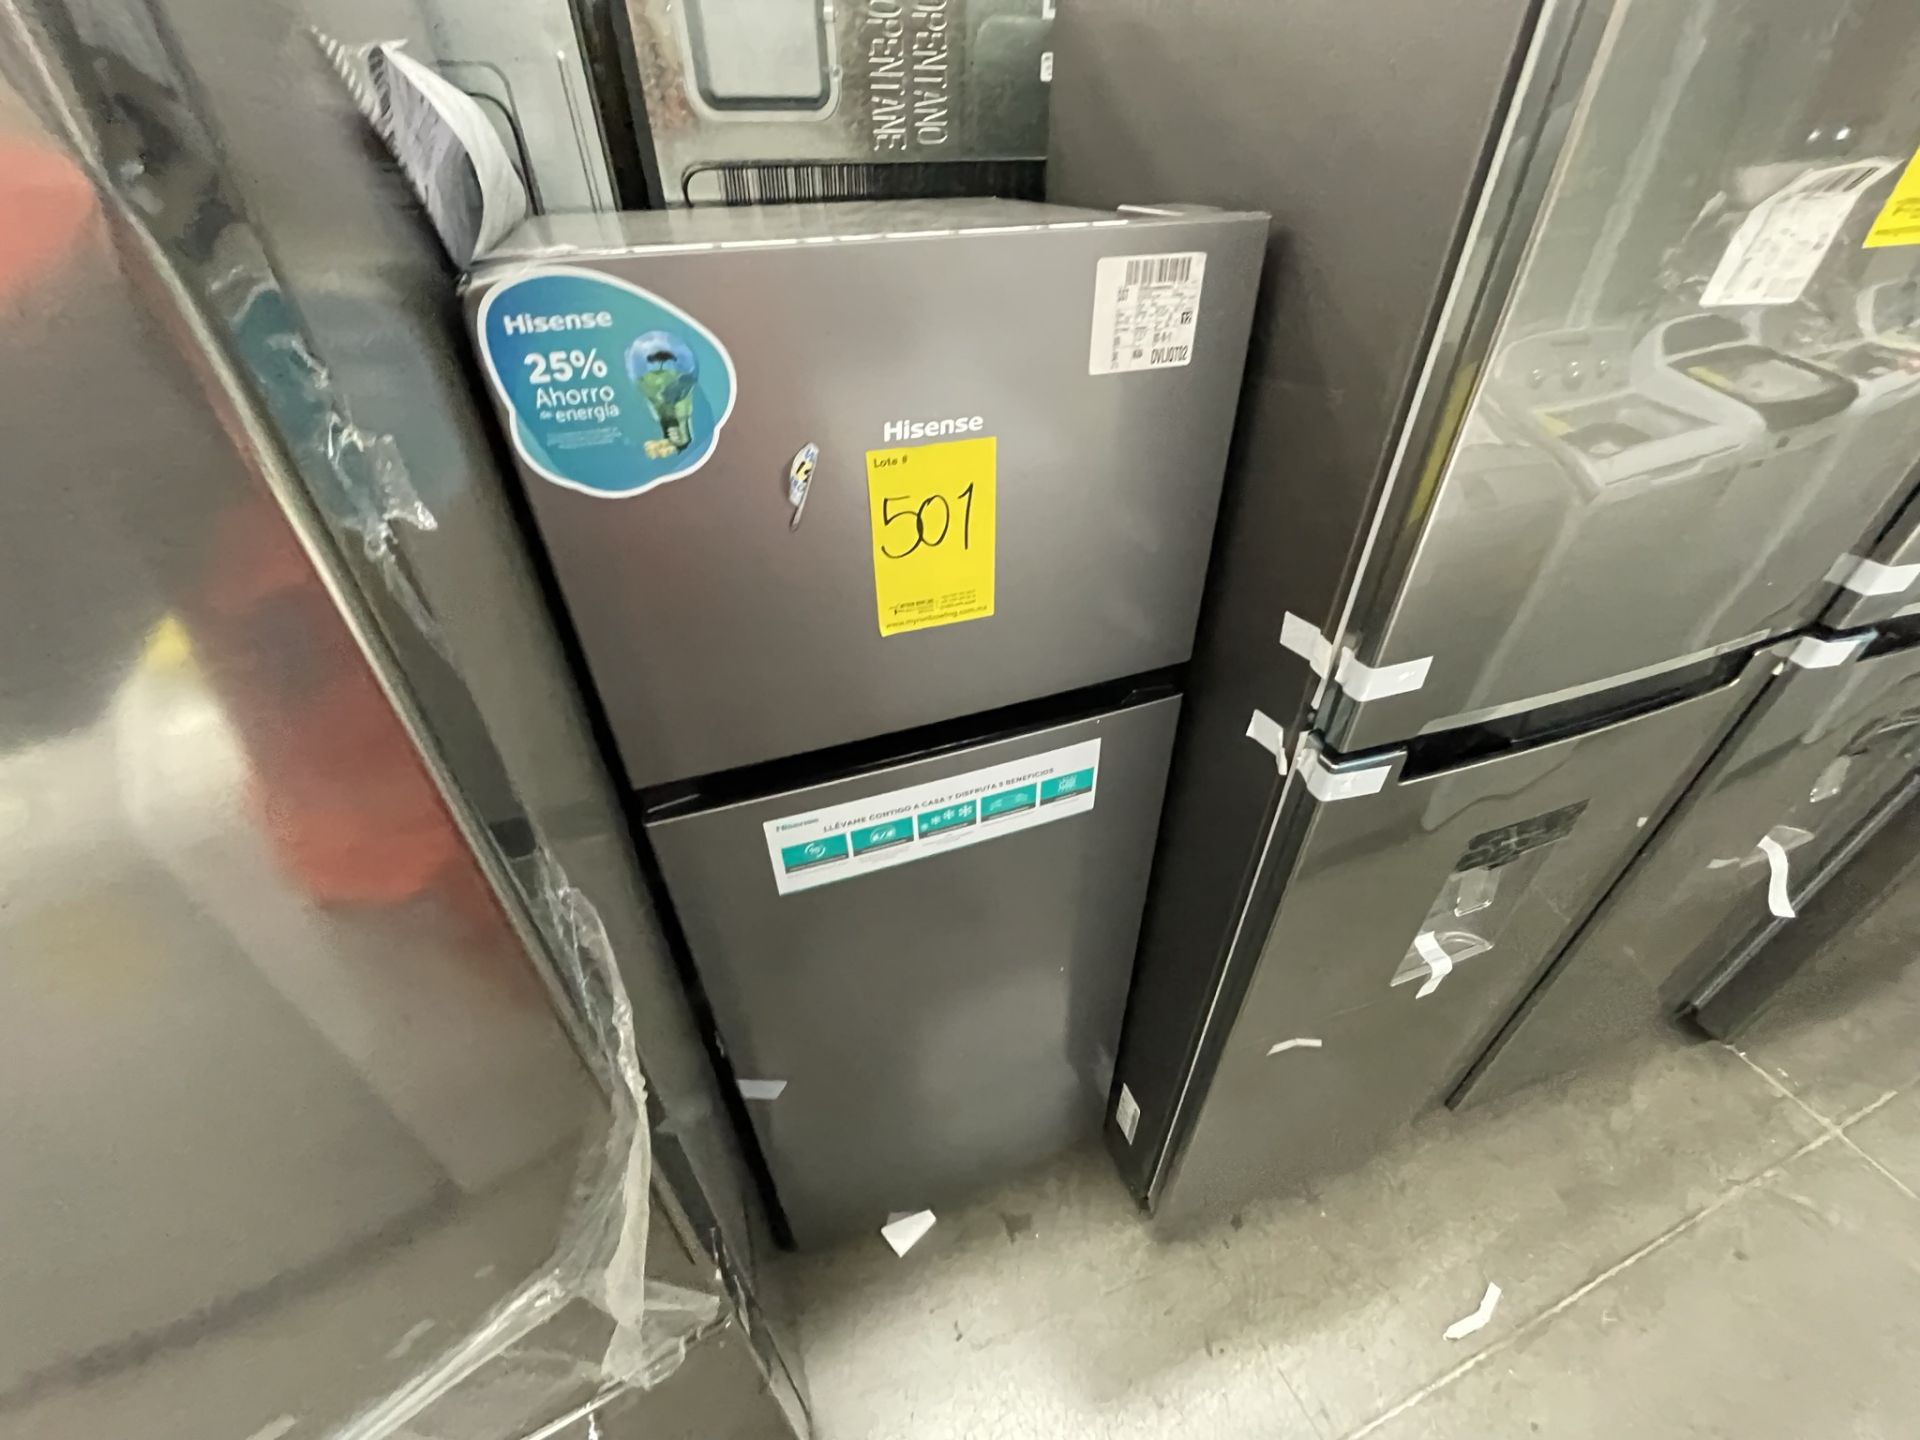 (EQUIPO NUEVO) Lote De 2 Refrigeradores Contiene: 1 Refrigerador Marca LG, Modelo GM29BP, Serie208M - Image 14 of 16